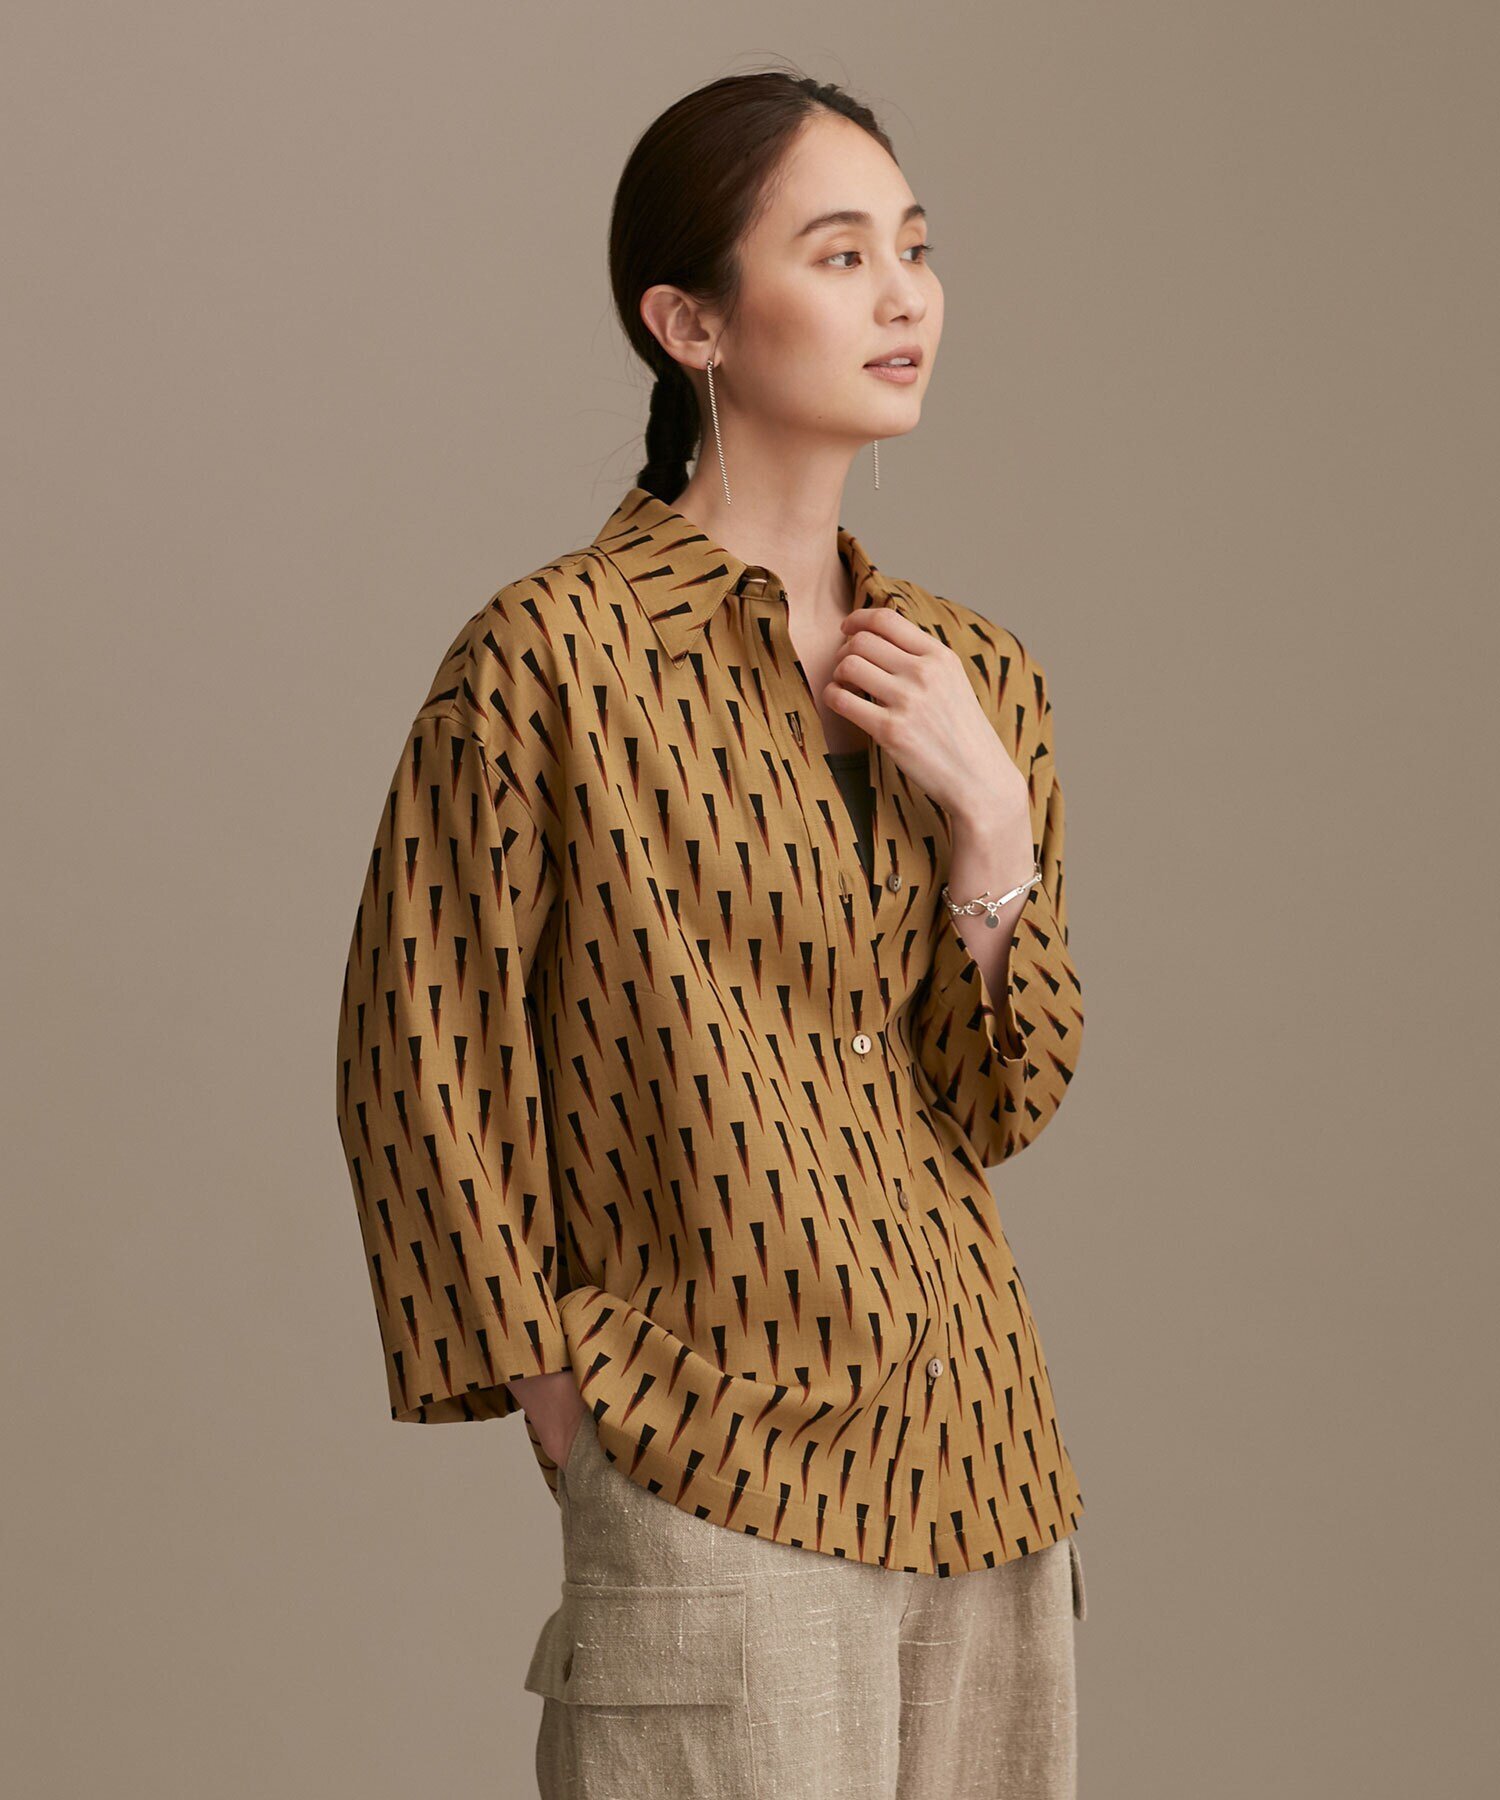 インドネシアのバティック柄の七分袖シャツ。モダンなエスニック柄で、ワイドシルエットがこなれた雰囲気です。カフスが無いすっきりとしたデザインで、袖を折ることでまた違った表情に。